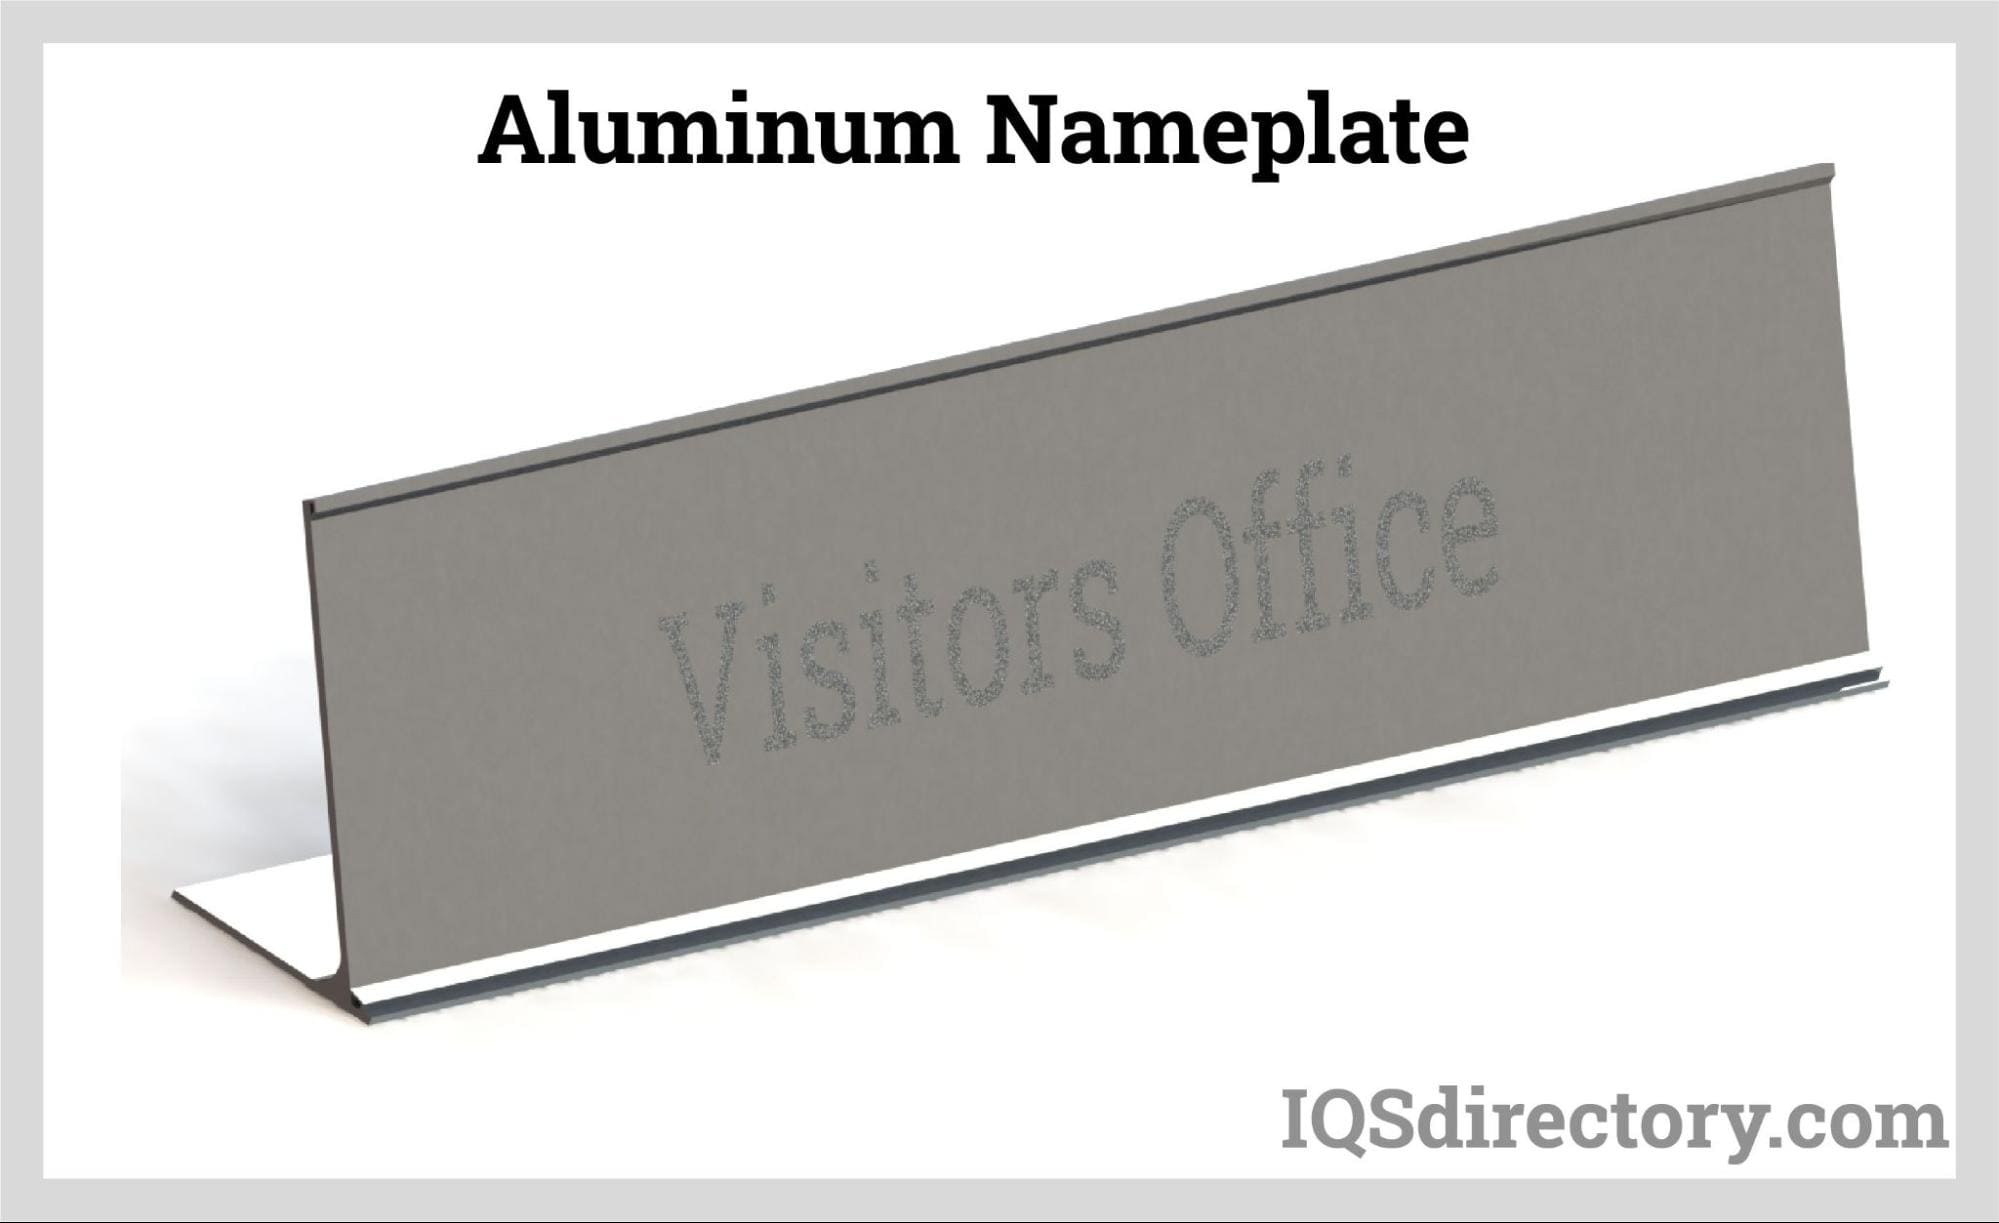 Aluminum Nameplate